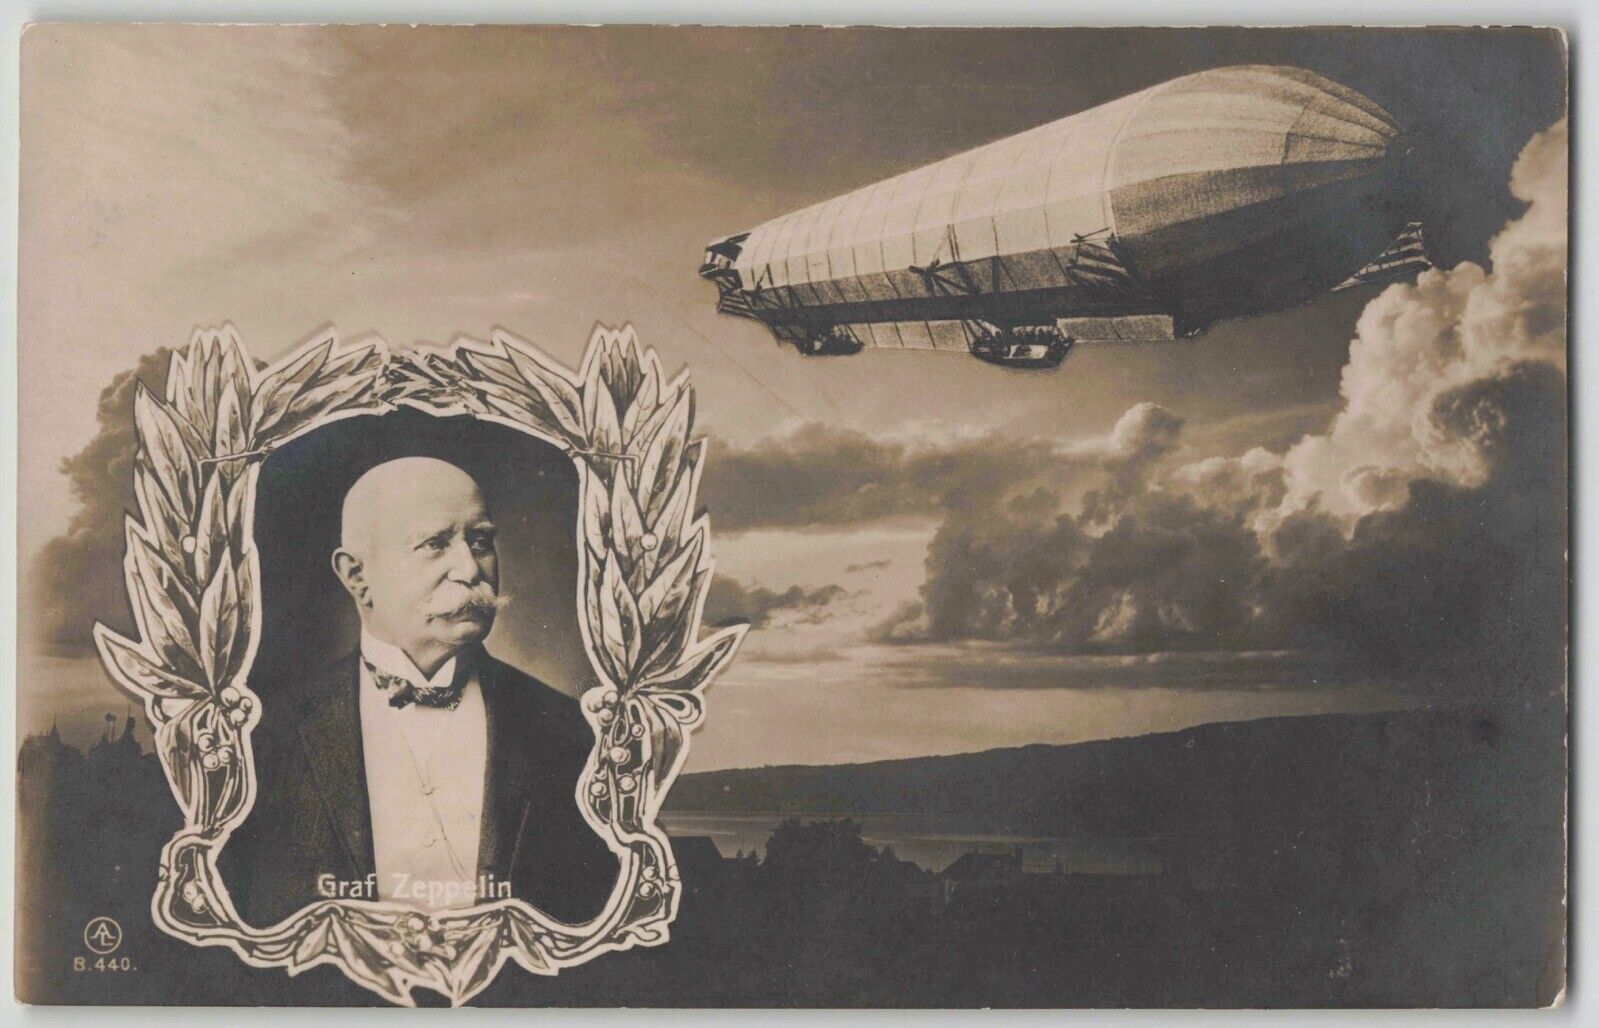 Germany c. 1910s Graf Zeppelin & Airship in Flight Postcard Unused